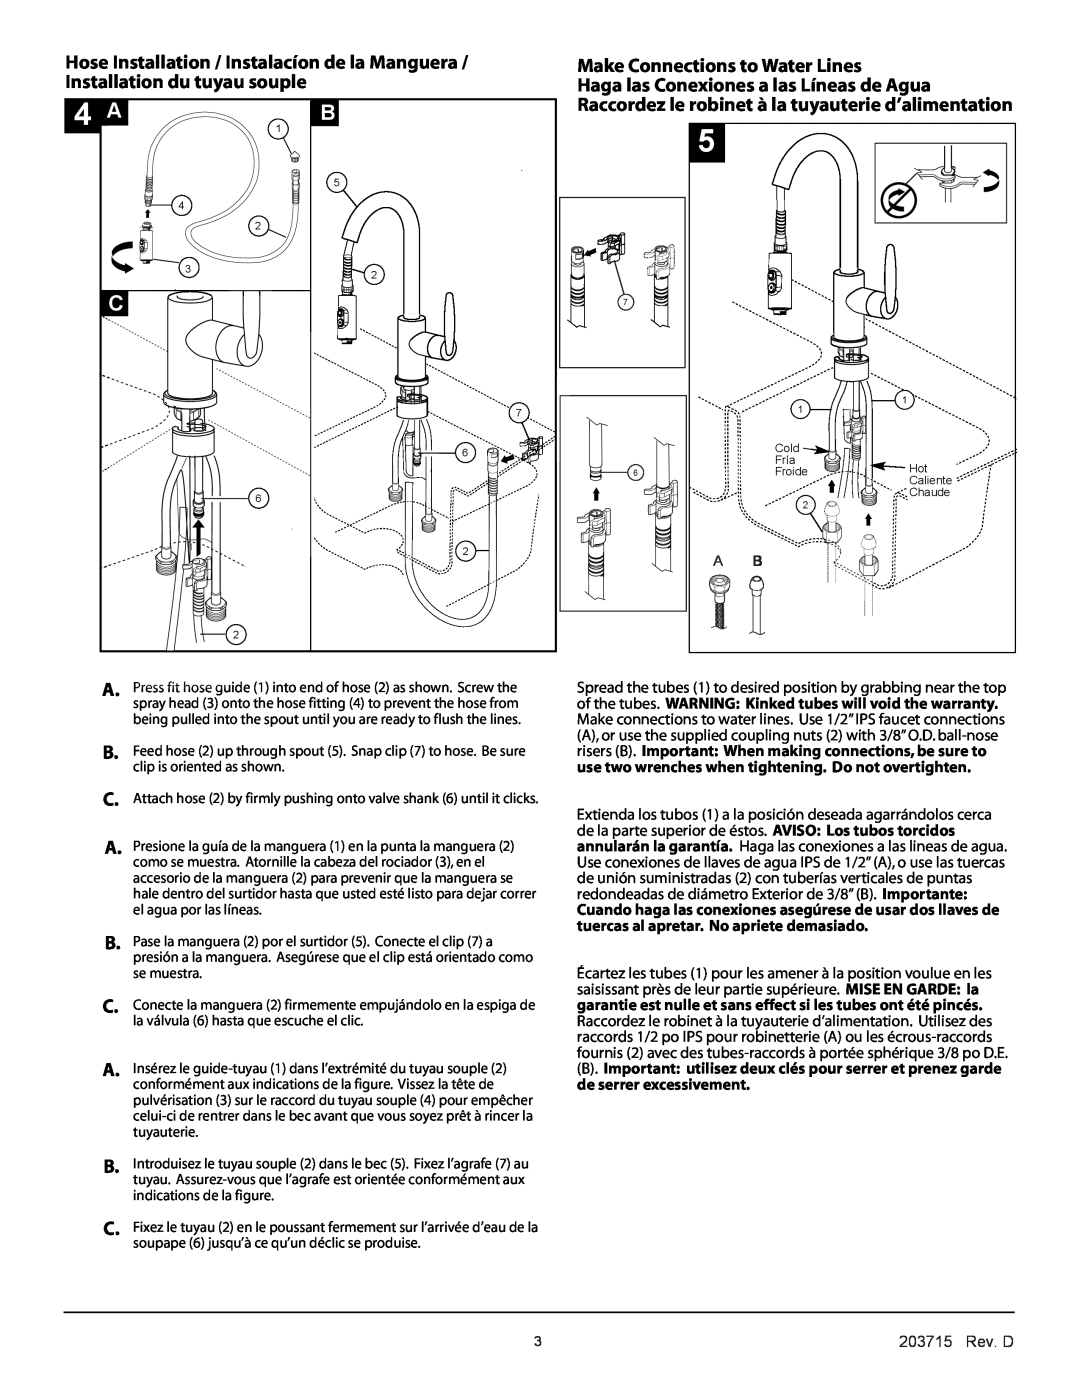 Delta 985 Series manual Make Connections to Water Lines, Haga las Conexiones a las Líneas de Agua, 203715 Rev. D 